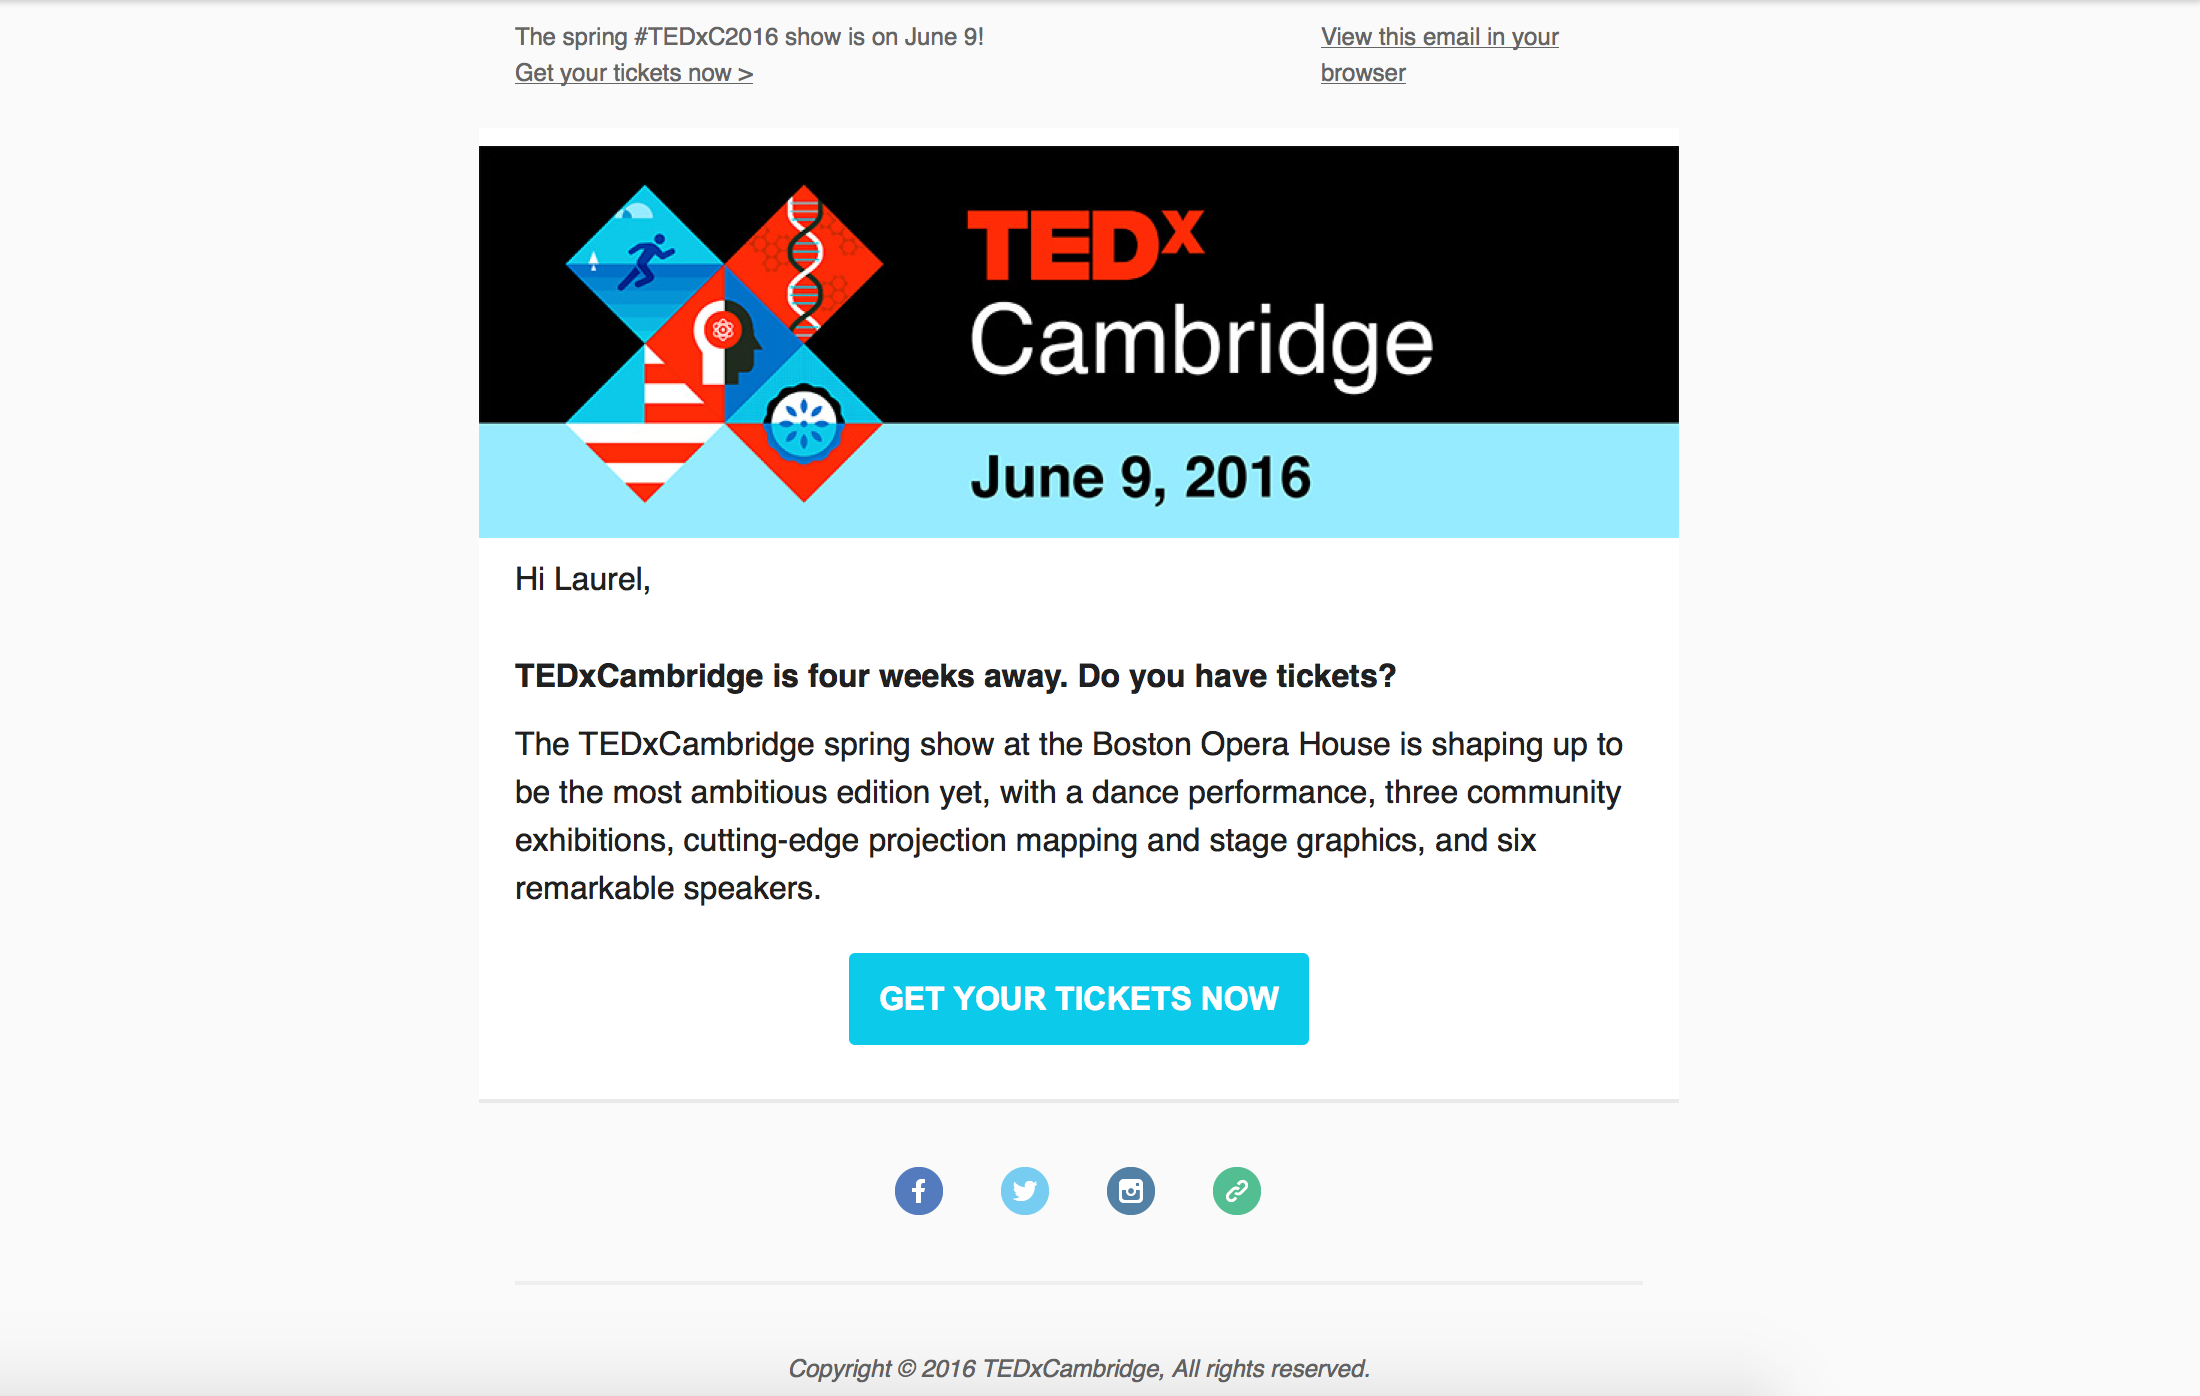 tedxcambridge-sample-email